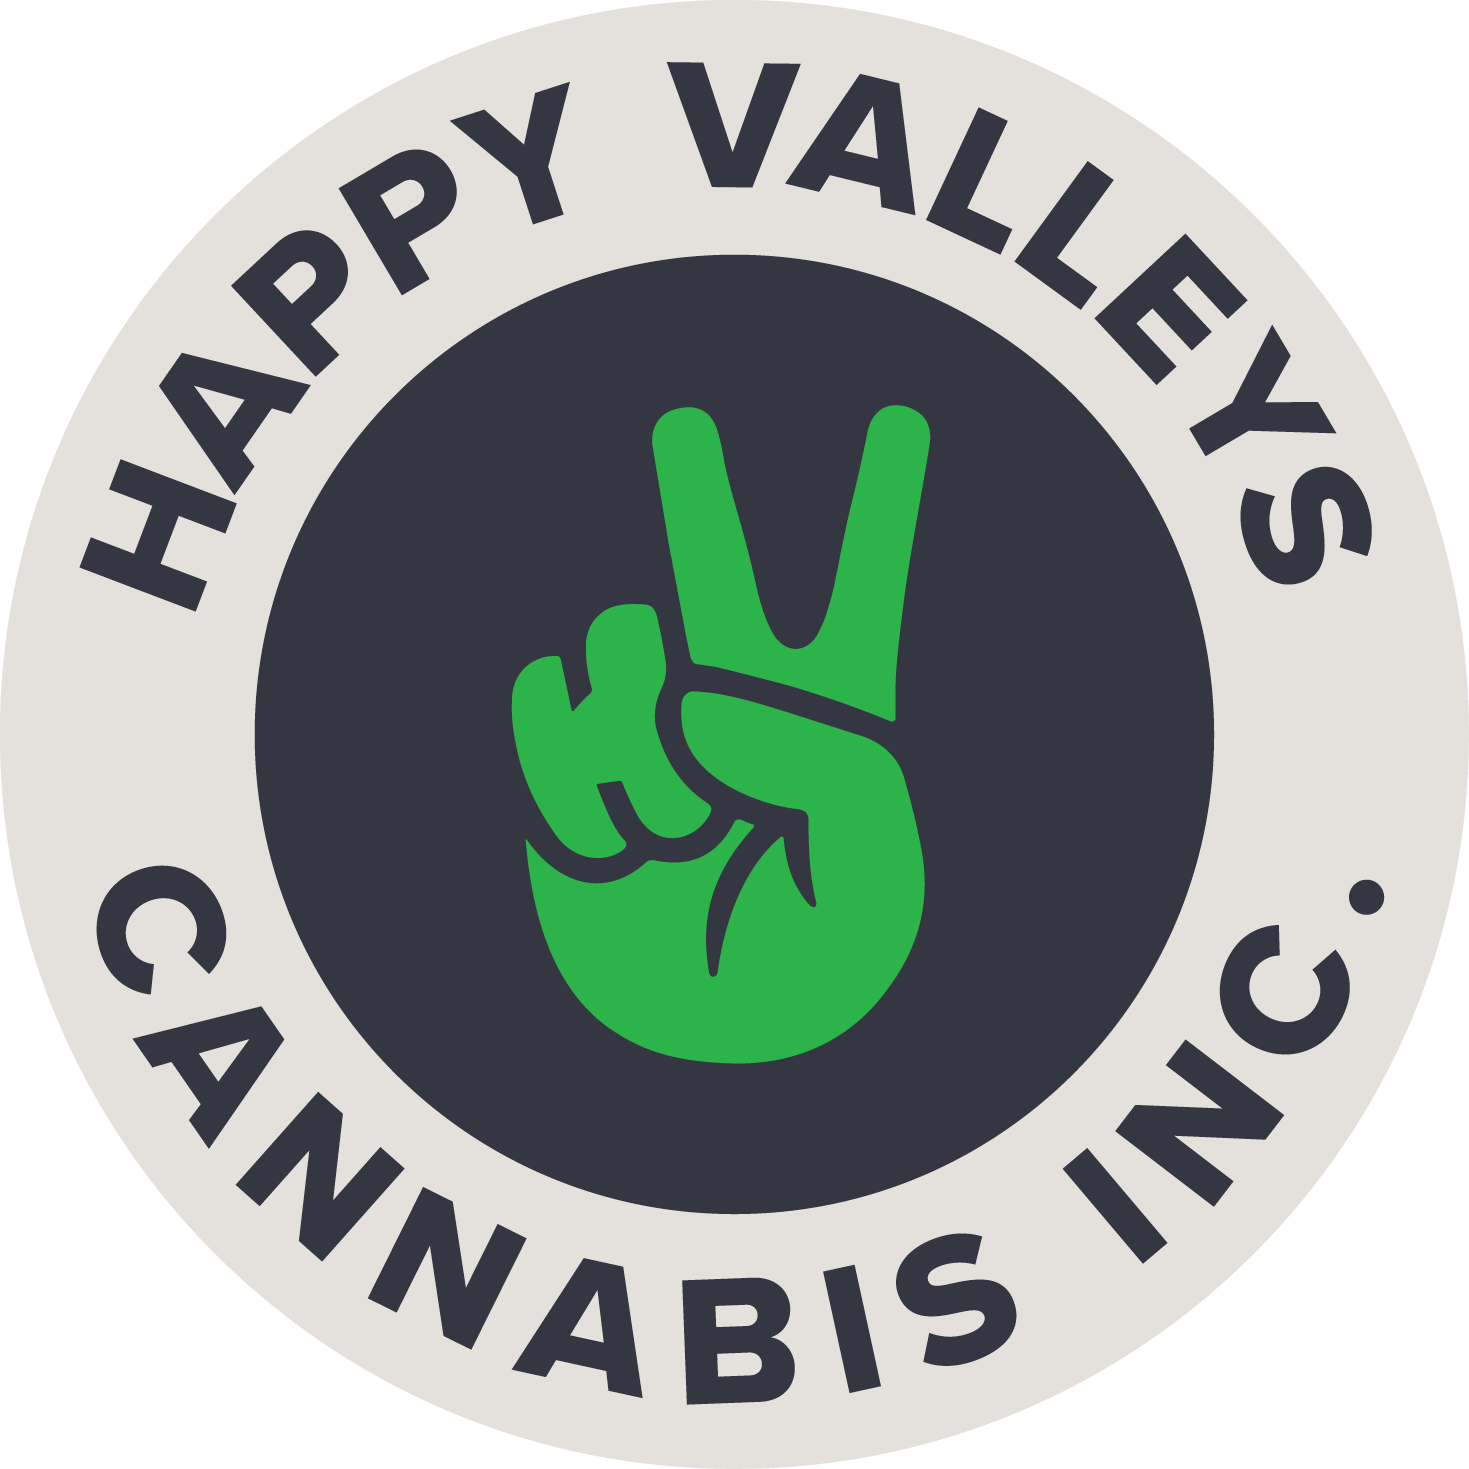 Happy Valleys Cannabis logo